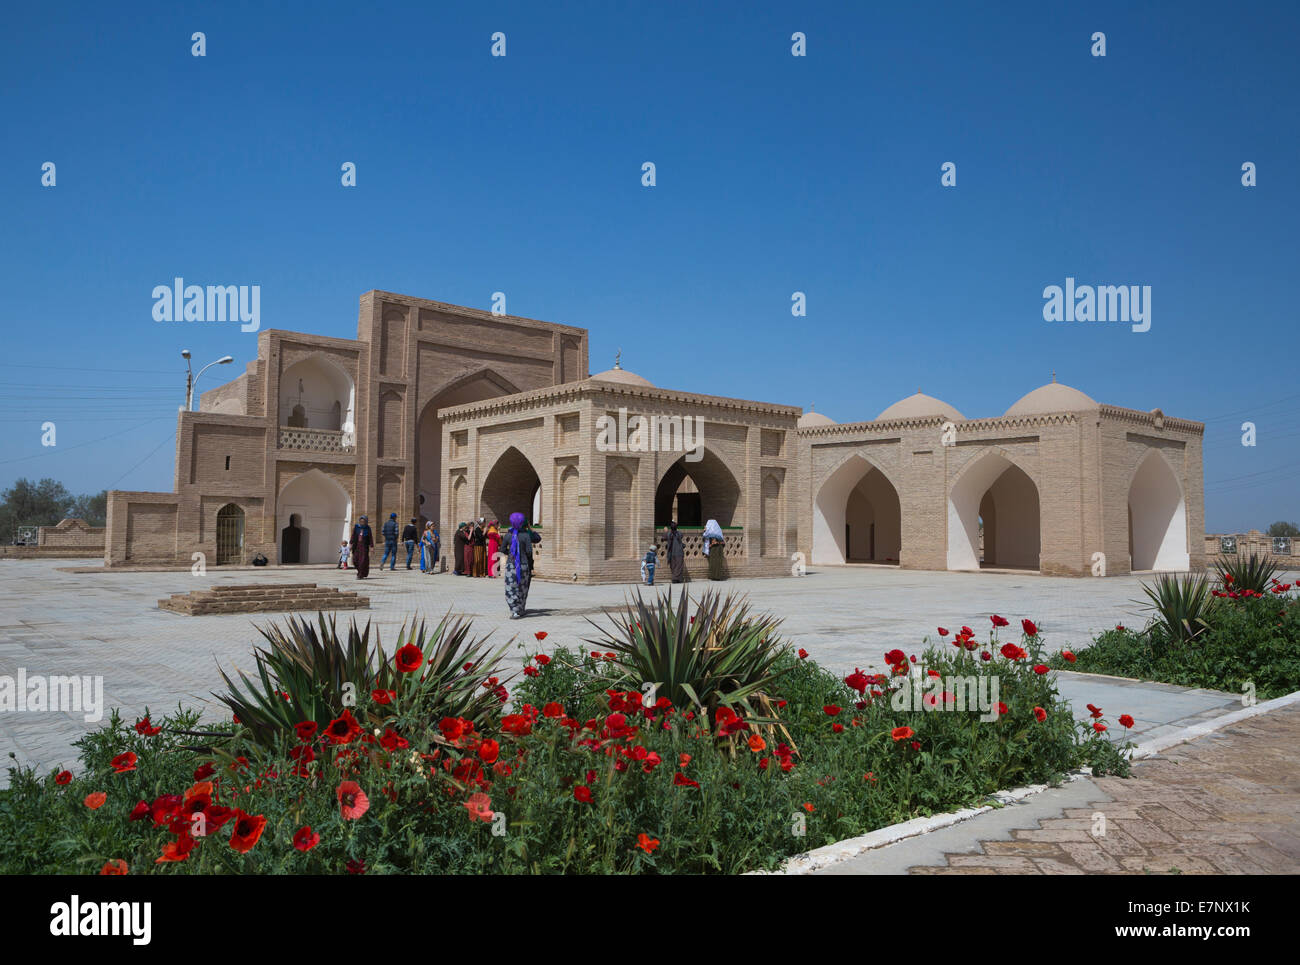 Sito archeologico, Hoya Yusuf, Mausoleo, Merv, Turkmenistan, Asia Centrale, Asia amapola, architettura, fiori, grave, histo Foto Stock